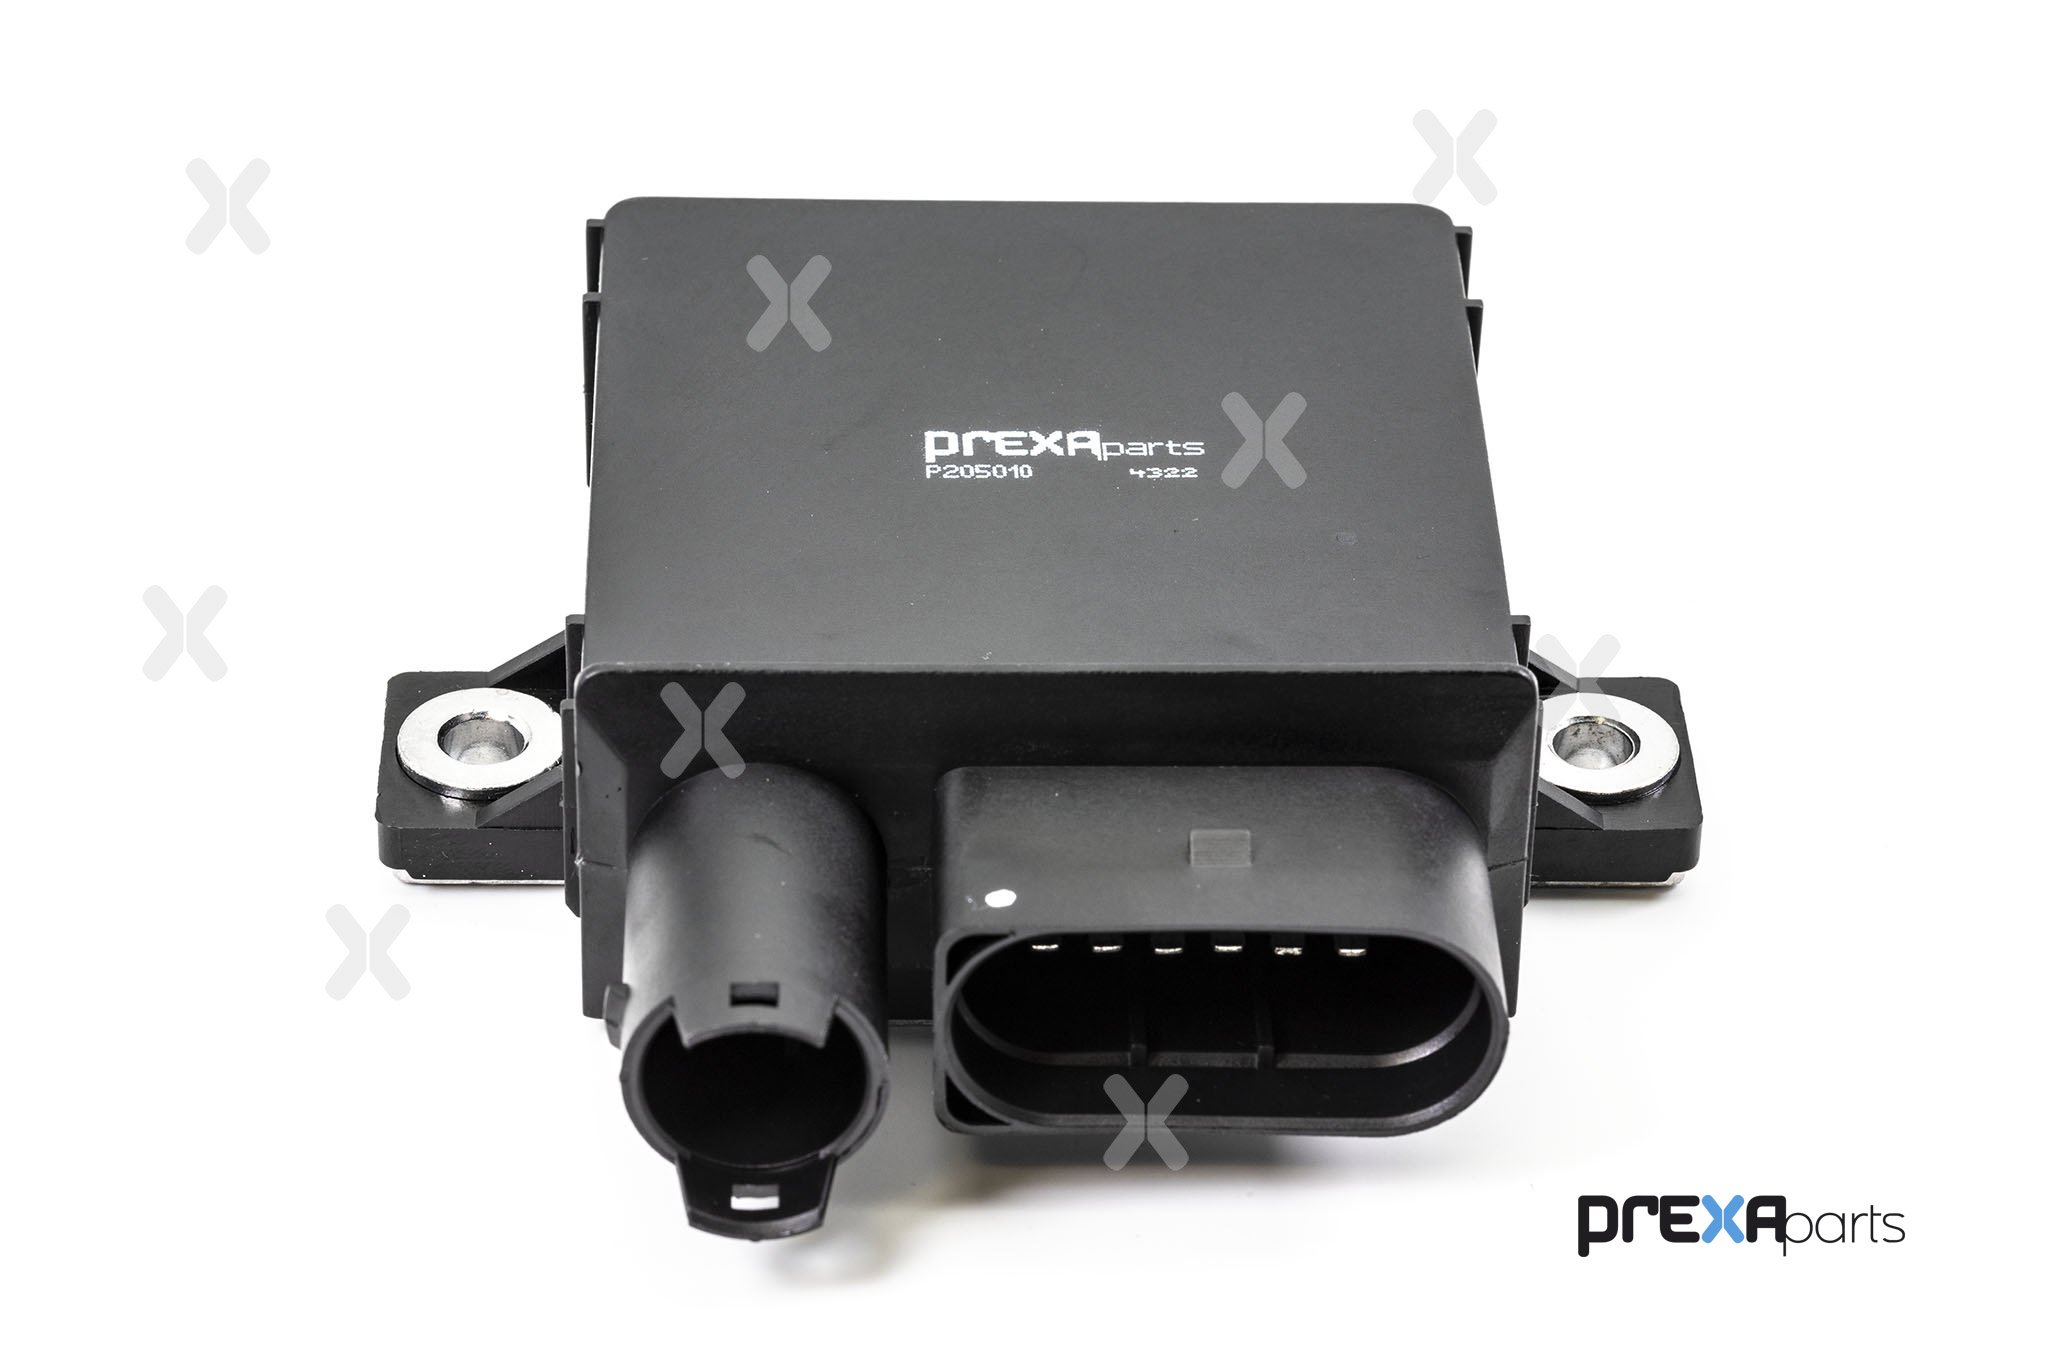 PREXAparts P205010